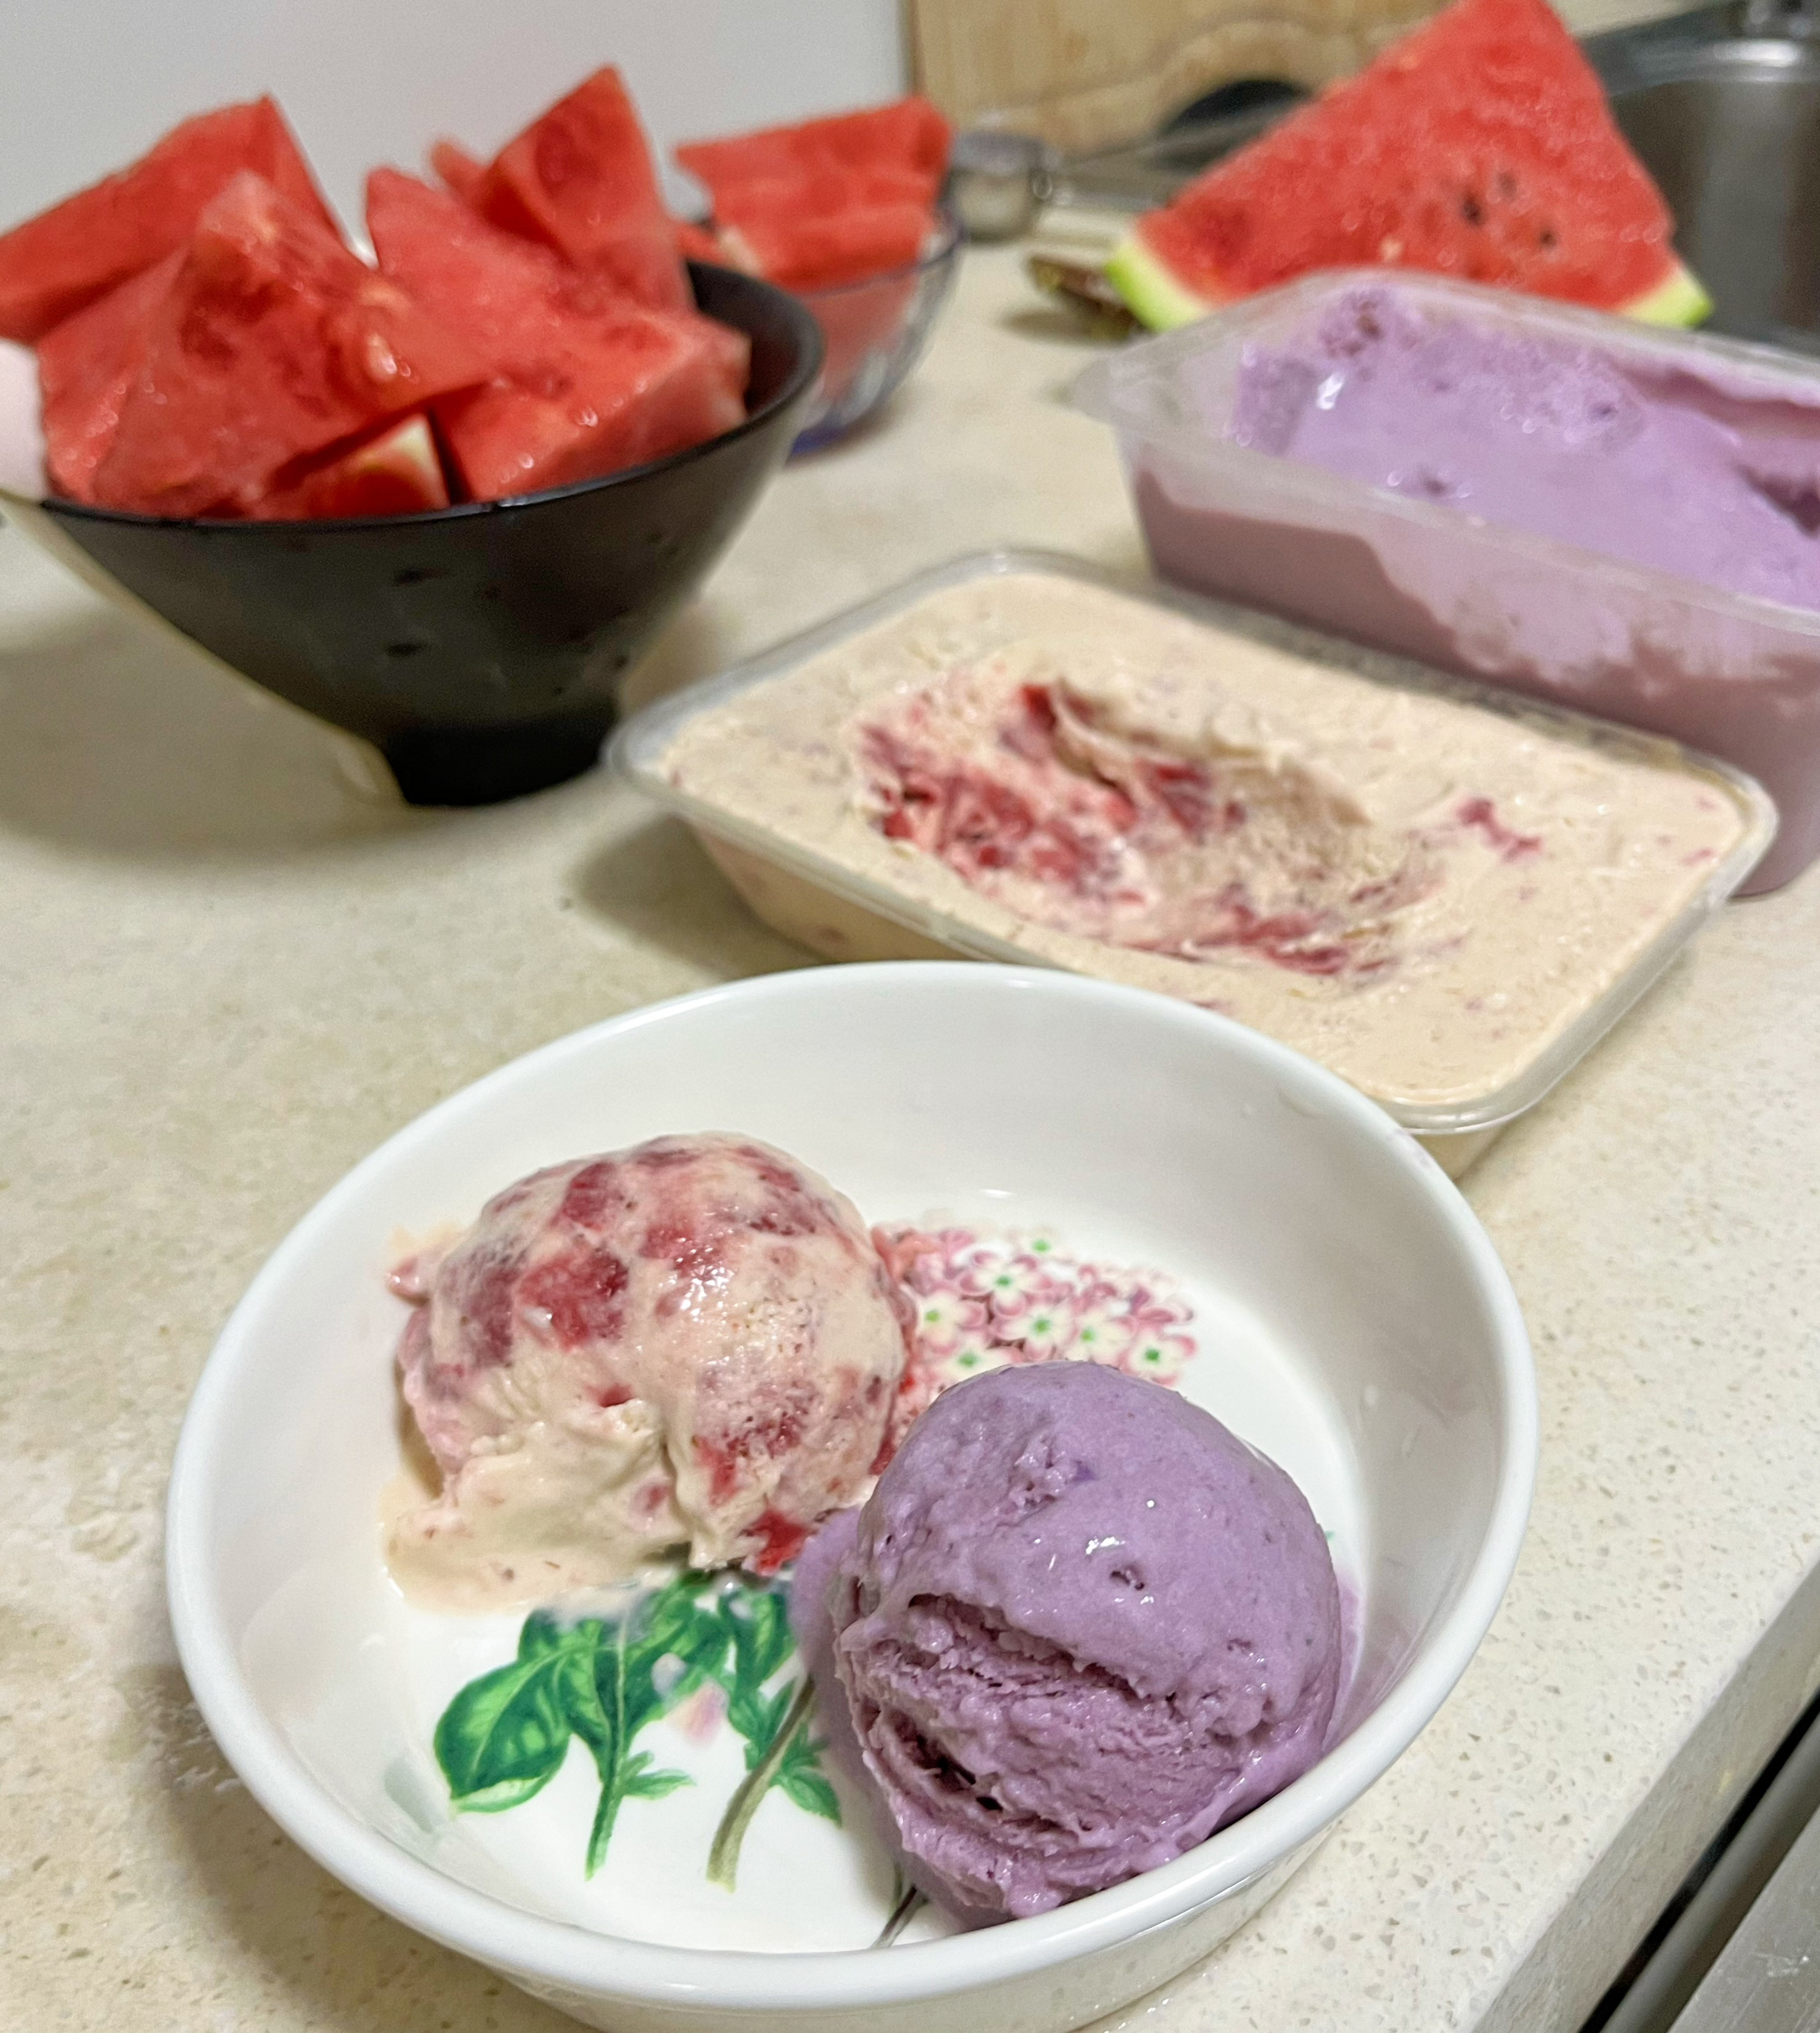 草莓冰淇淋🍓🍦🍨